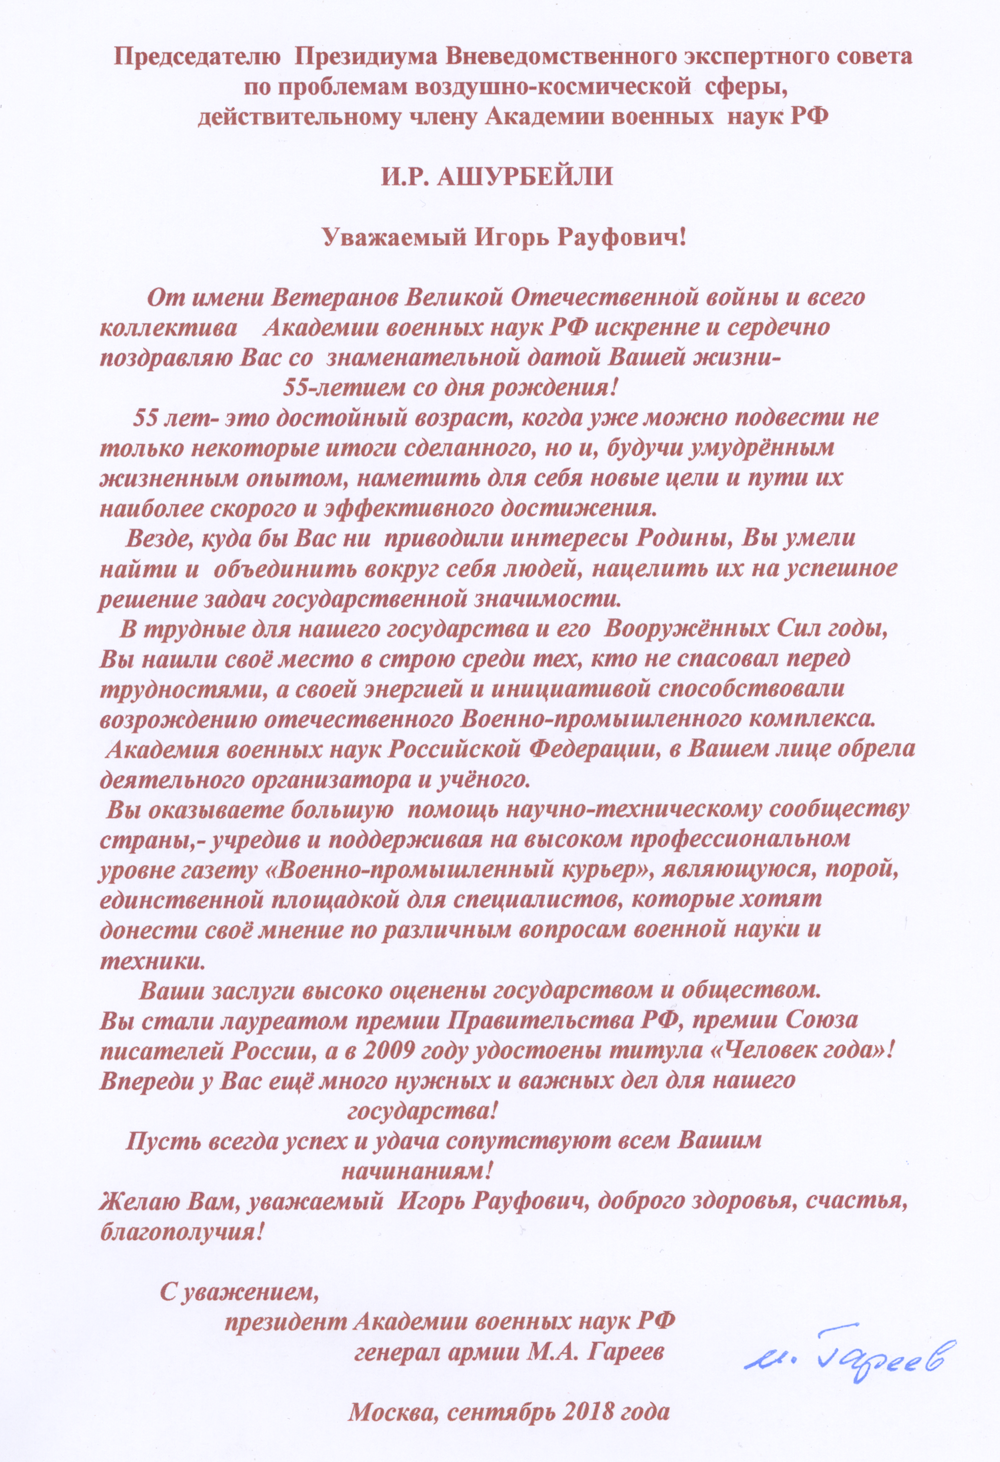 Поздравление Игорю Ашурбейли от генерала армии М.А. Гареева